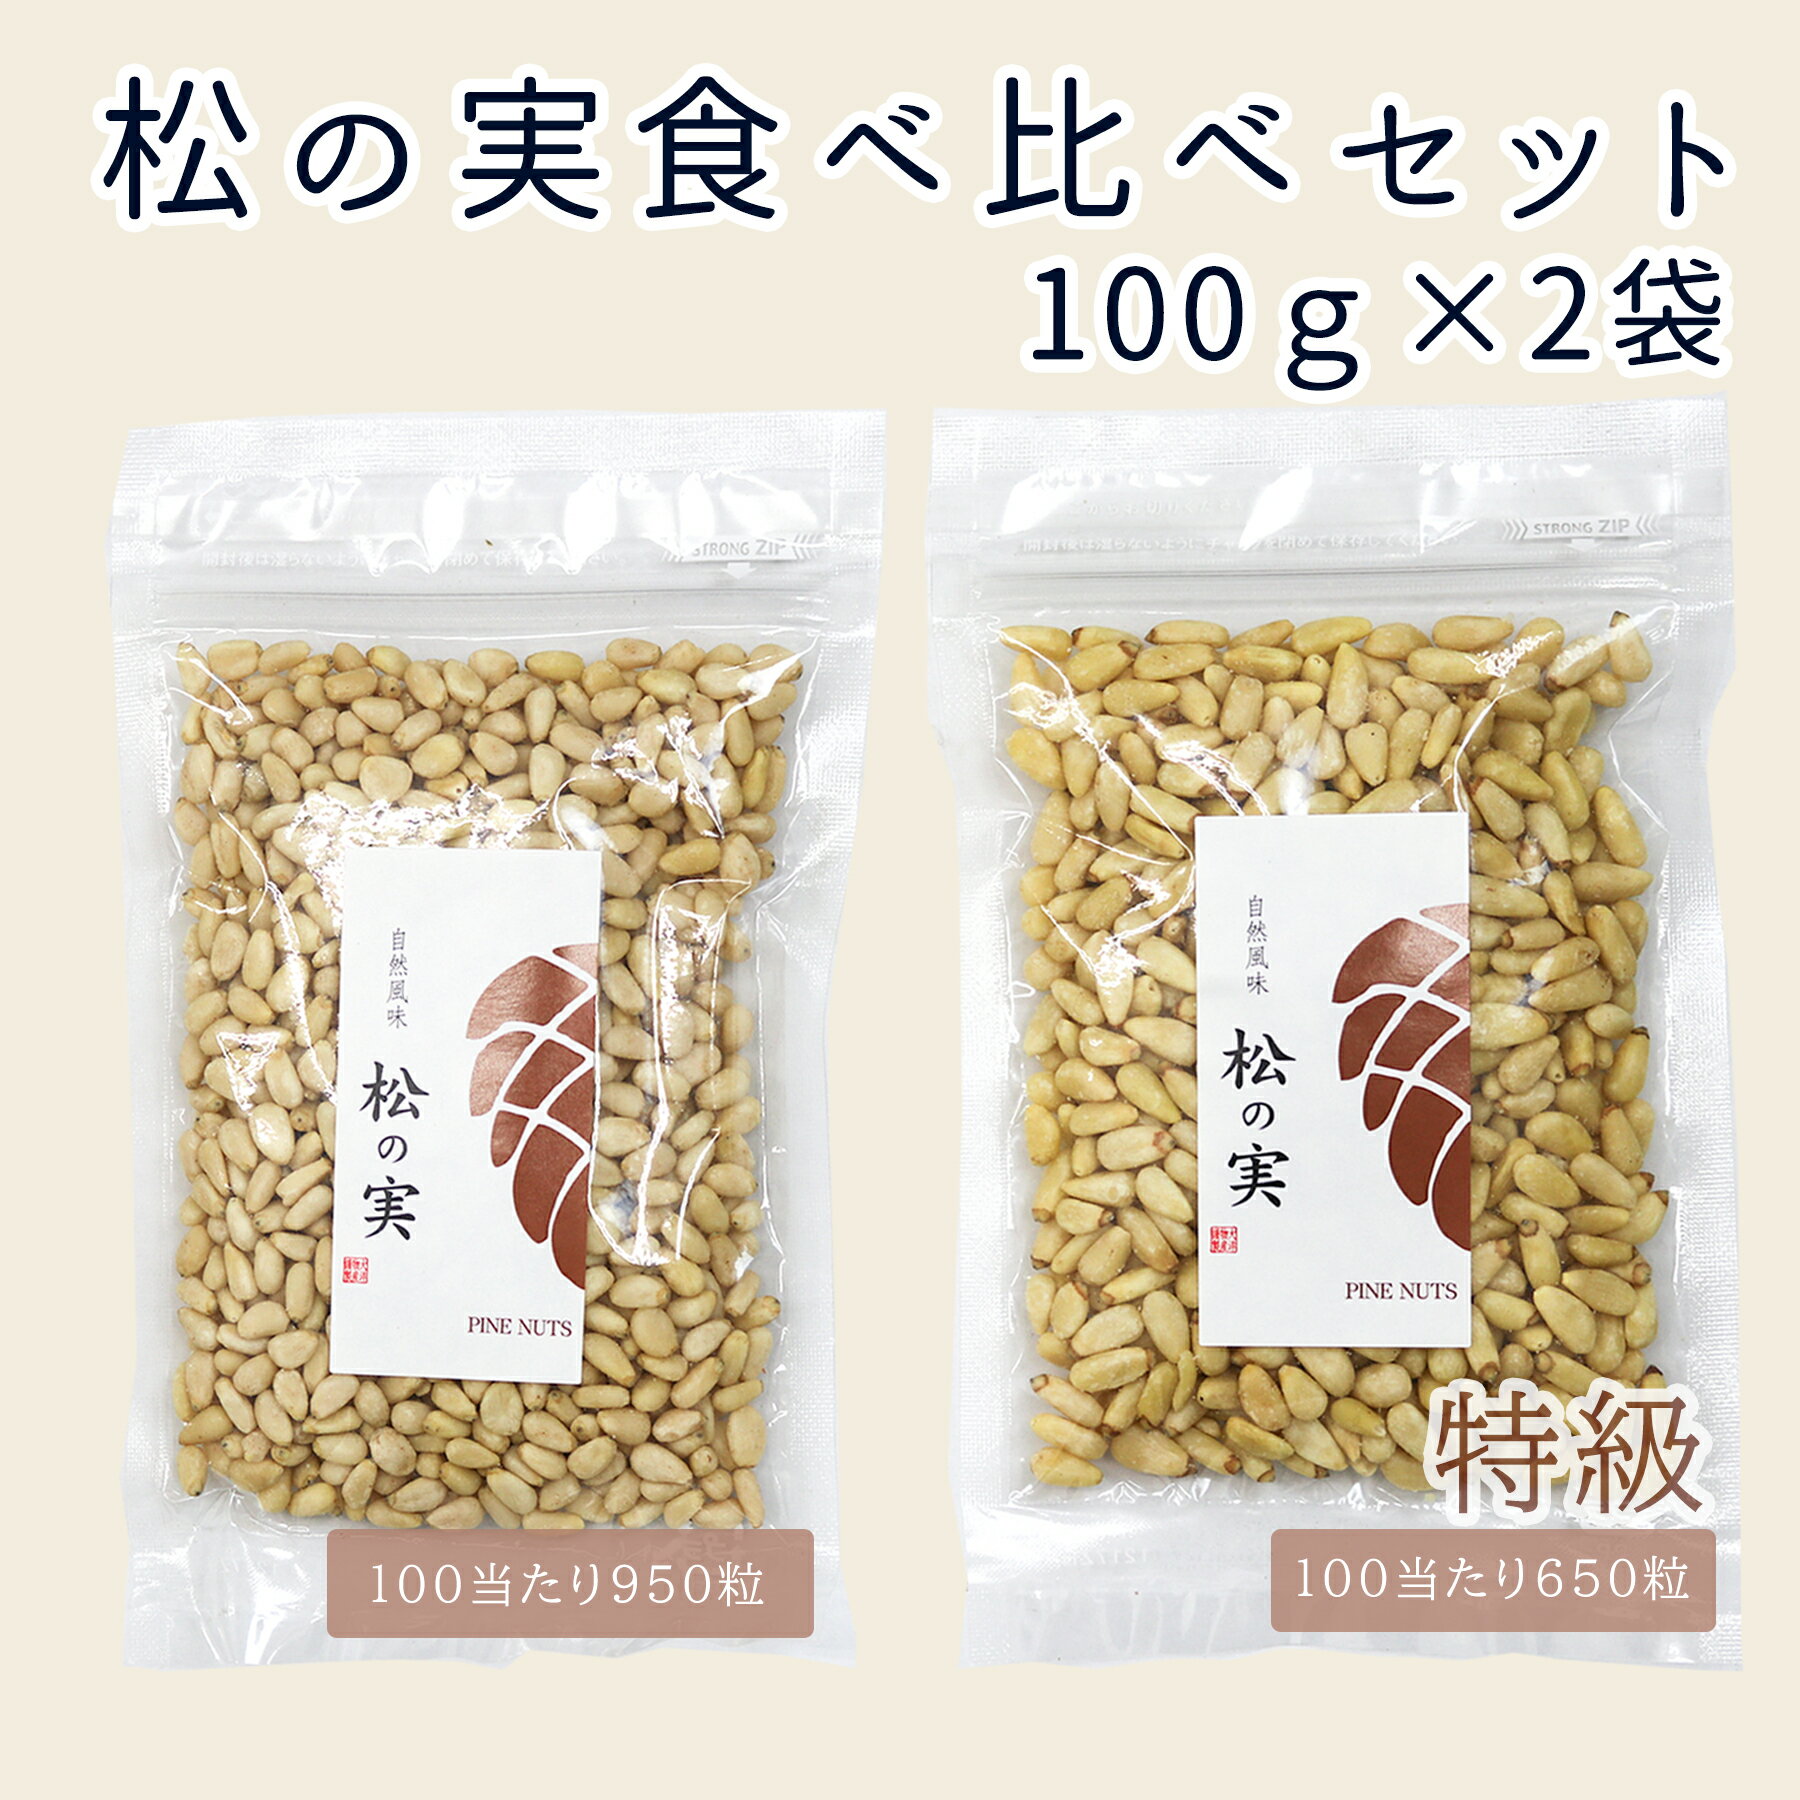 松の実 200g（小粒100g +特級100g）食べ